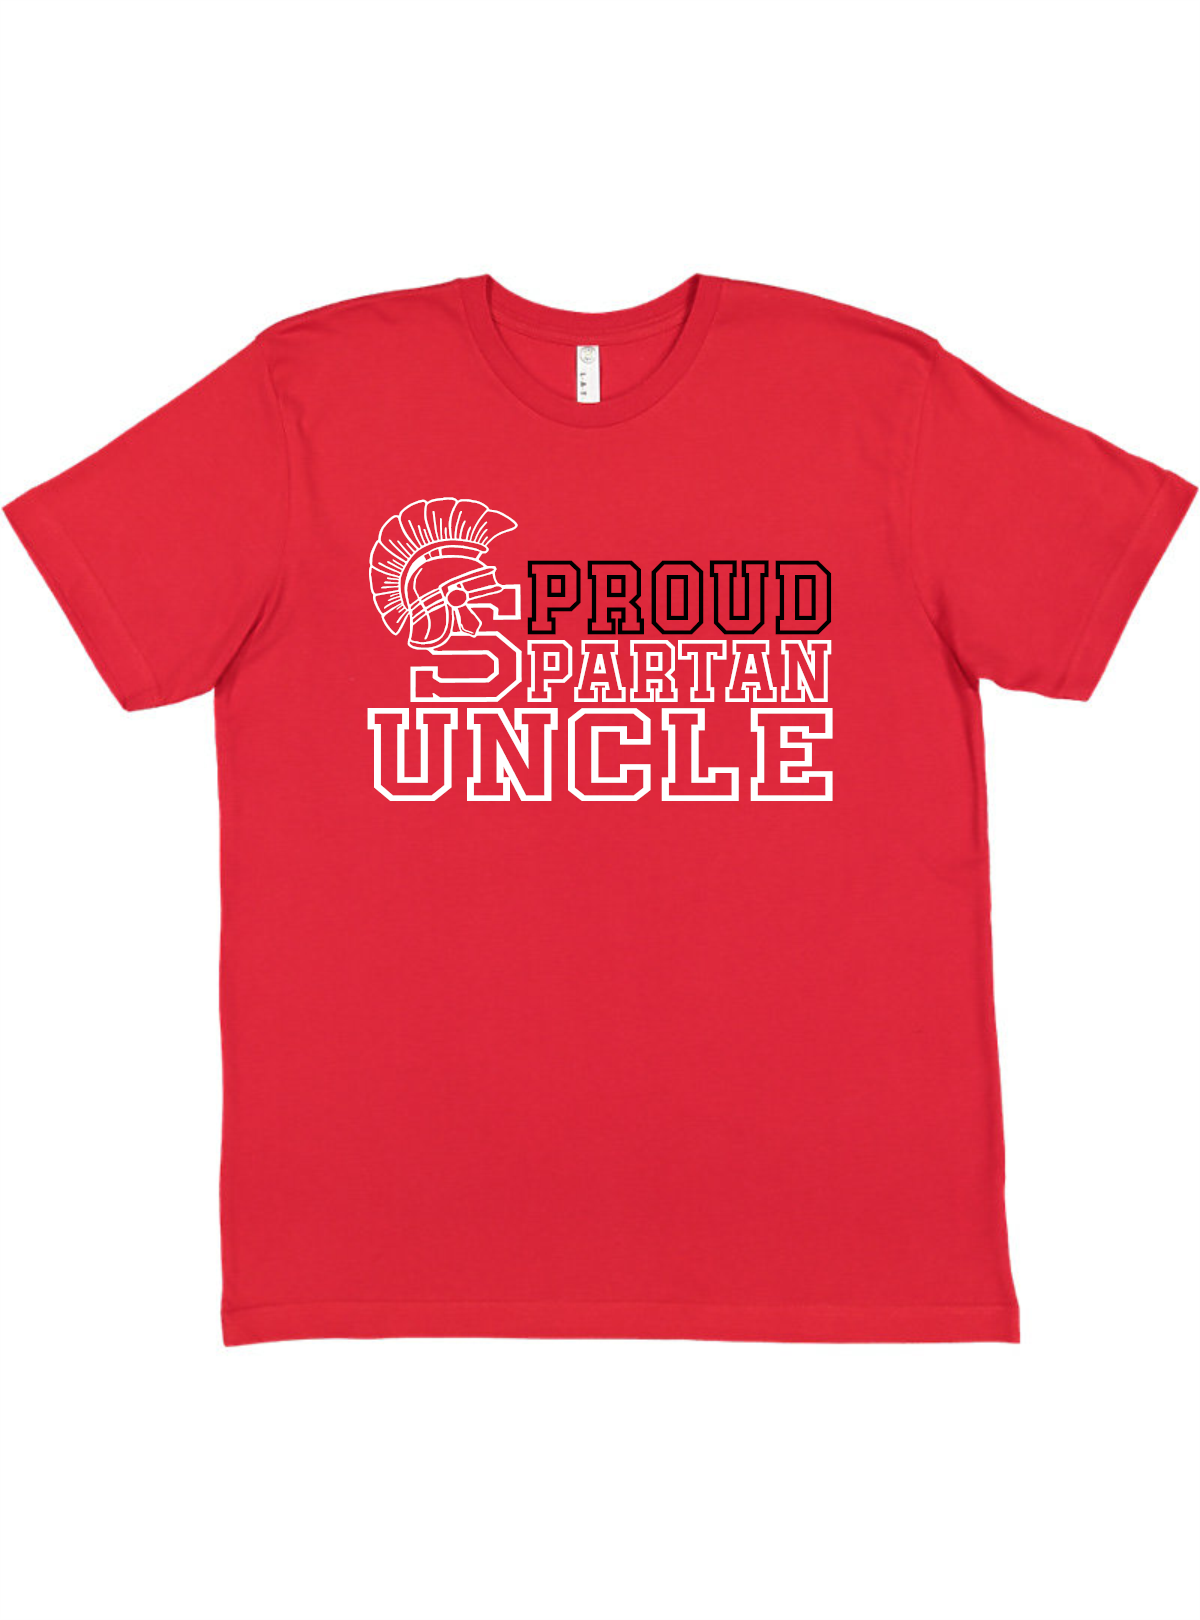 Proud Spartan Uncle Tee Akron Pride Custom Tees